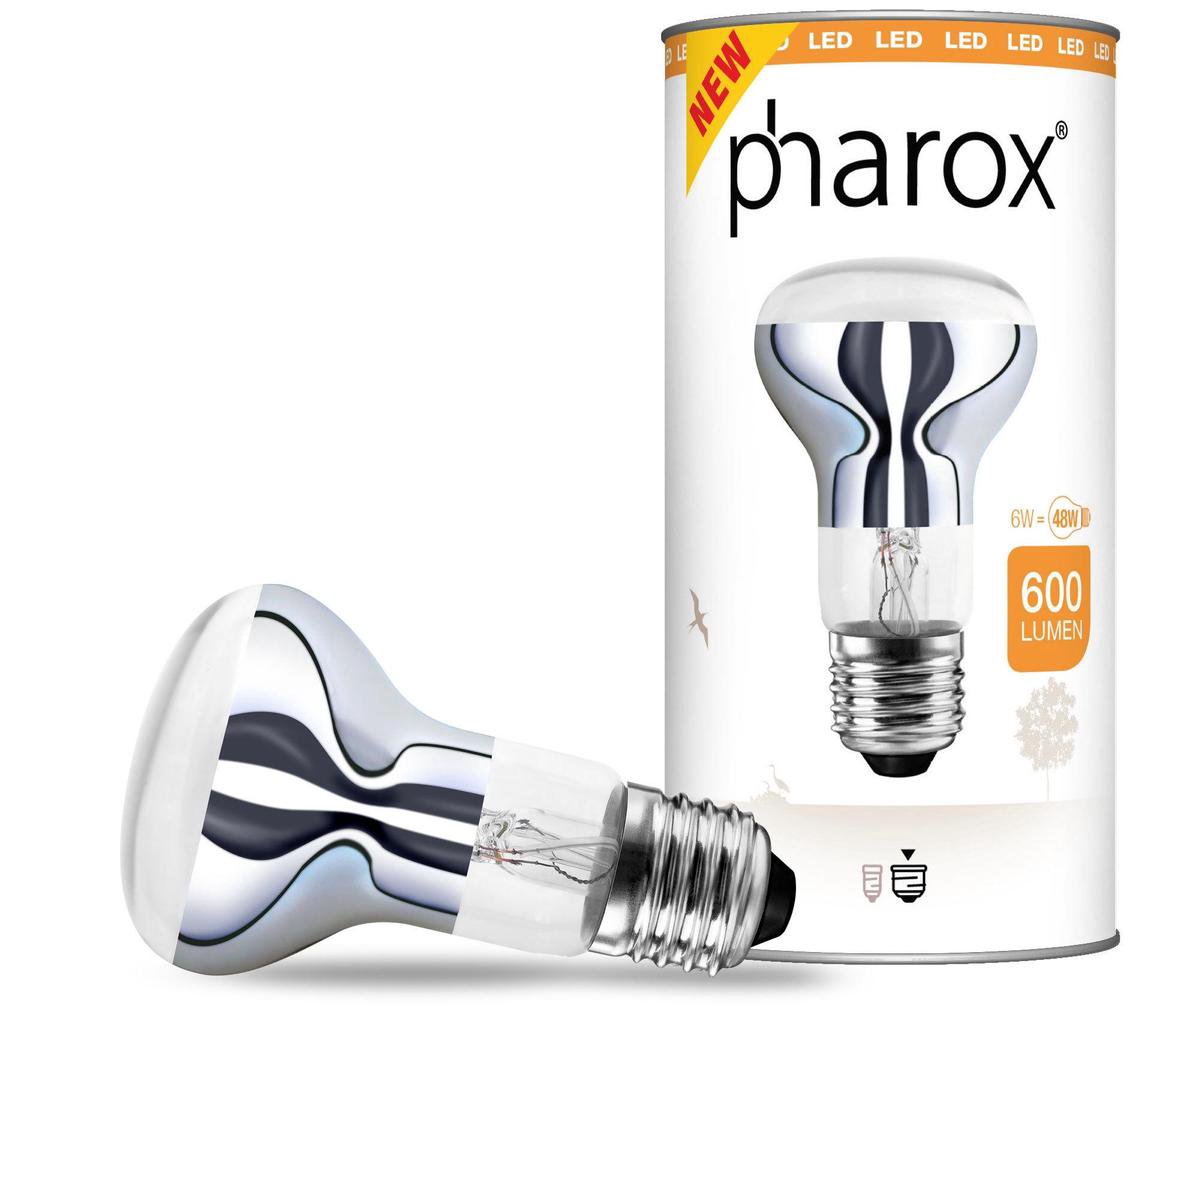 Lemnis Pharox Pharox LED lamp E27 6W 600 lumen | bol.com